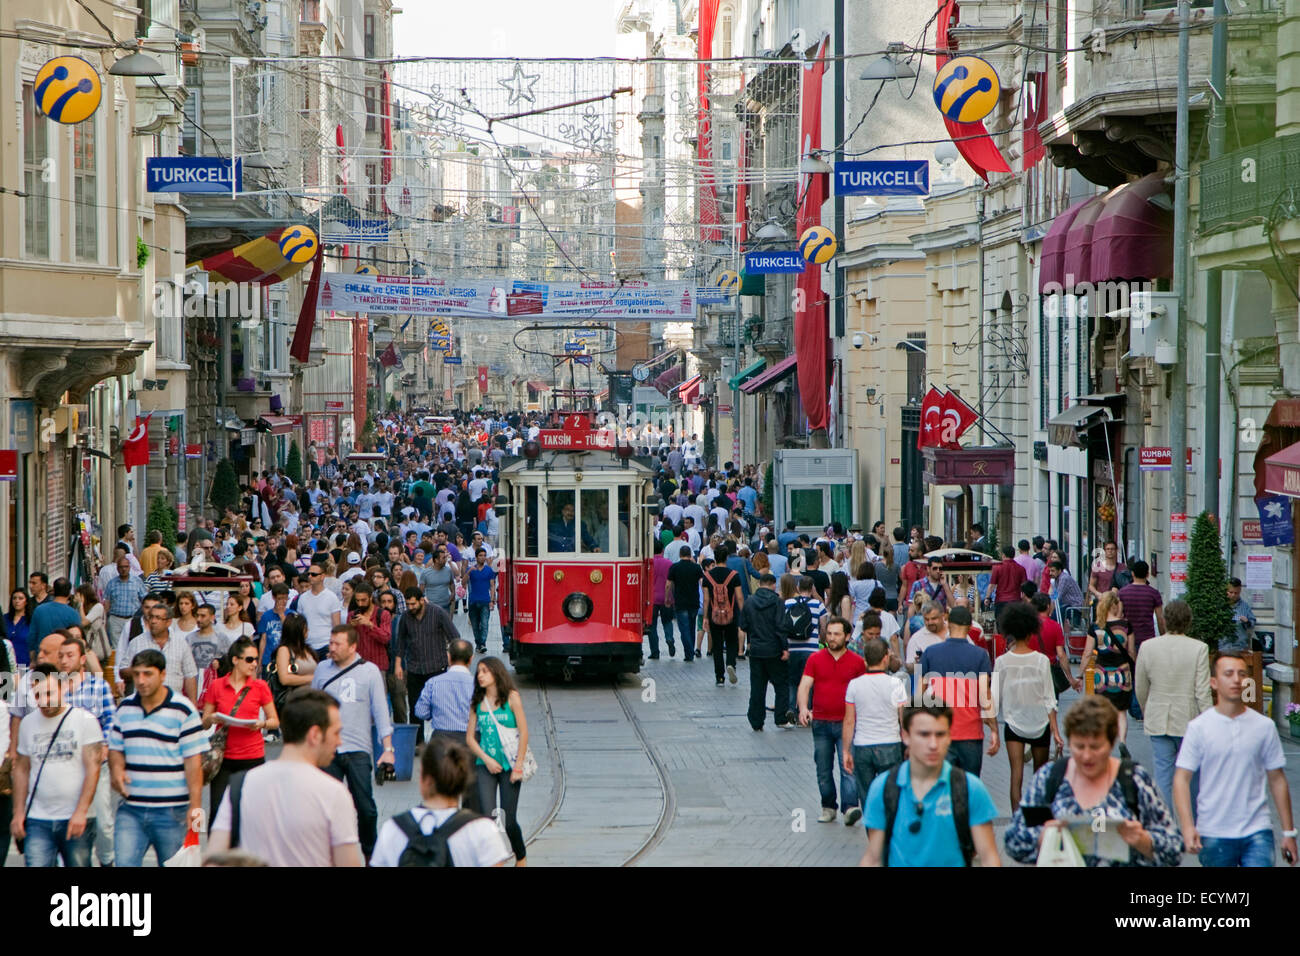 Tramway historique de l'avenue Istiklal, rue commerçante animée près de la place Taksim dans la ville Istanbul, Turquie Banque D'Images